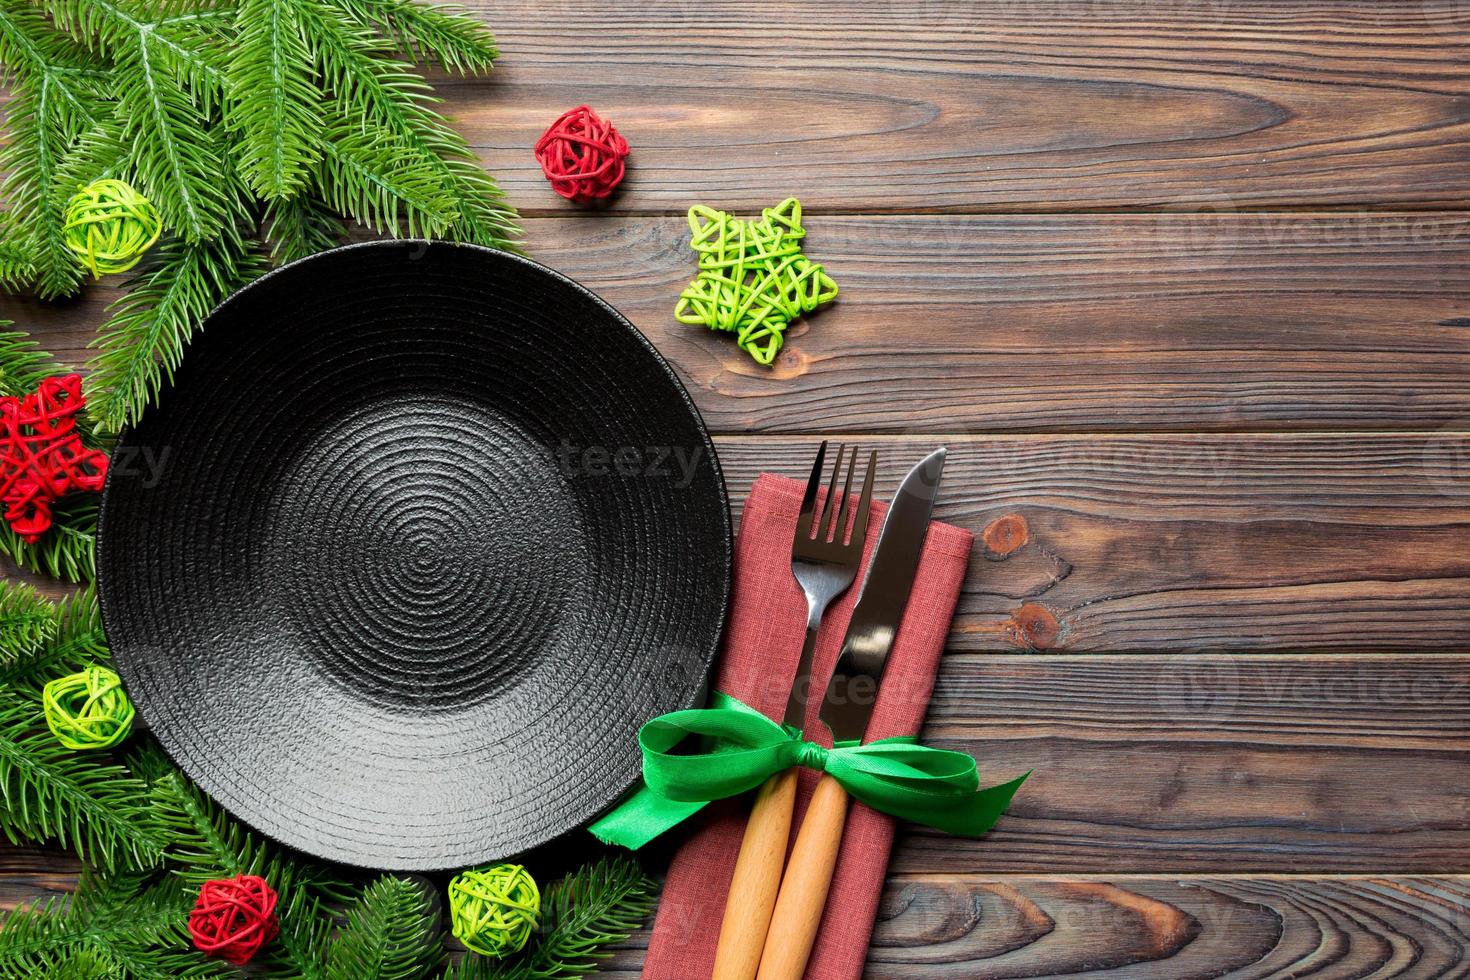 topp se av ny år middag på festlig trä- bakgrund. sammansättning av tallrik, gaffel, kniv, gran träd och dekorationer. glad jul begrepp foto